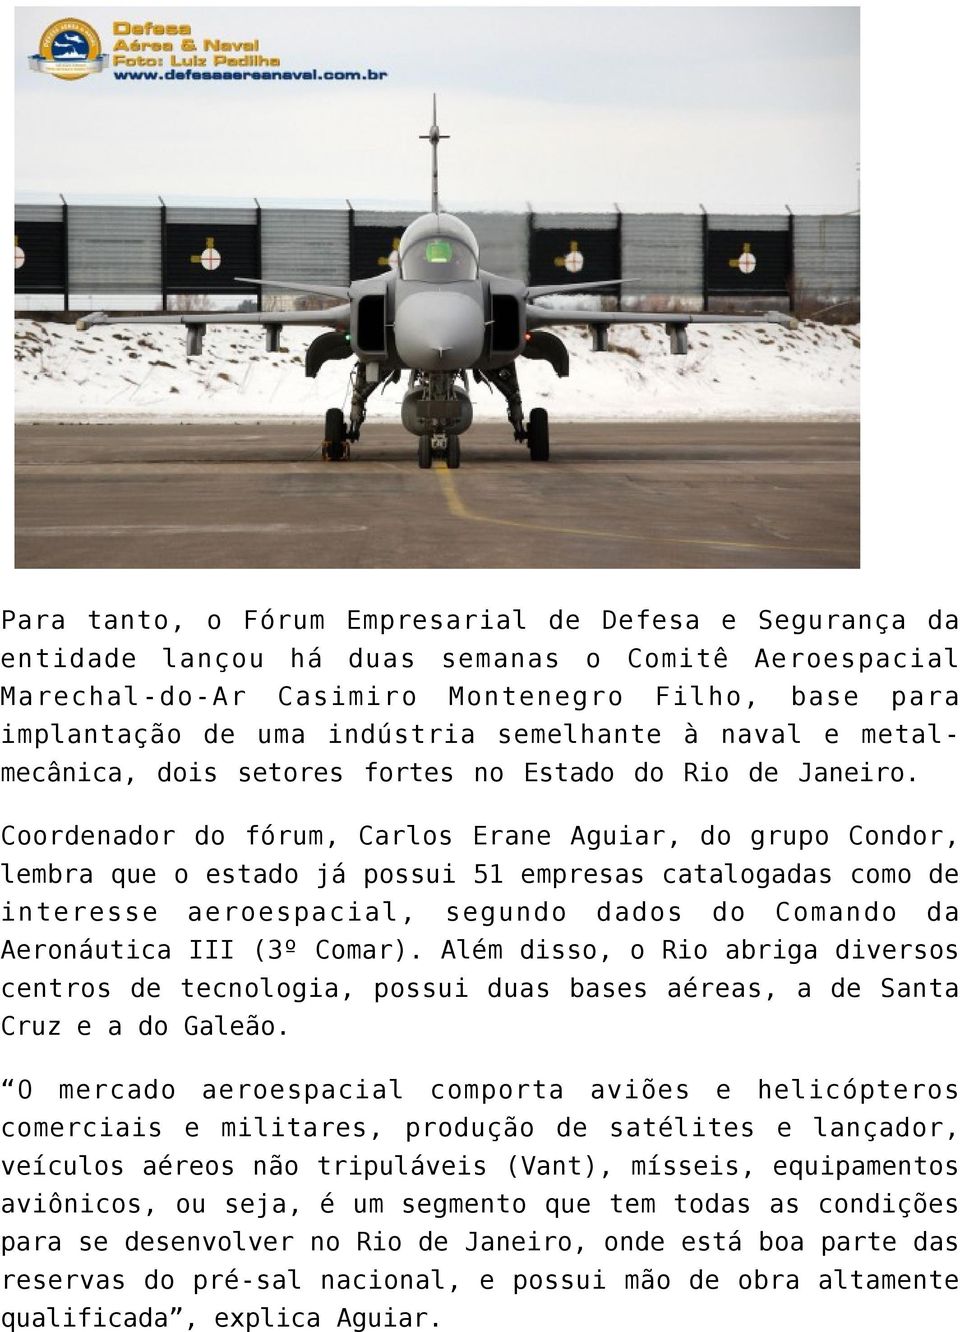 Coordenador do fórum, Carlos Erane Aguiar, do grupo Condor, lembra que o estado já possui 51 empresas catalogadas como de interesse aeroespacial, segundo dados do Comando da Aeronáutica III (3º